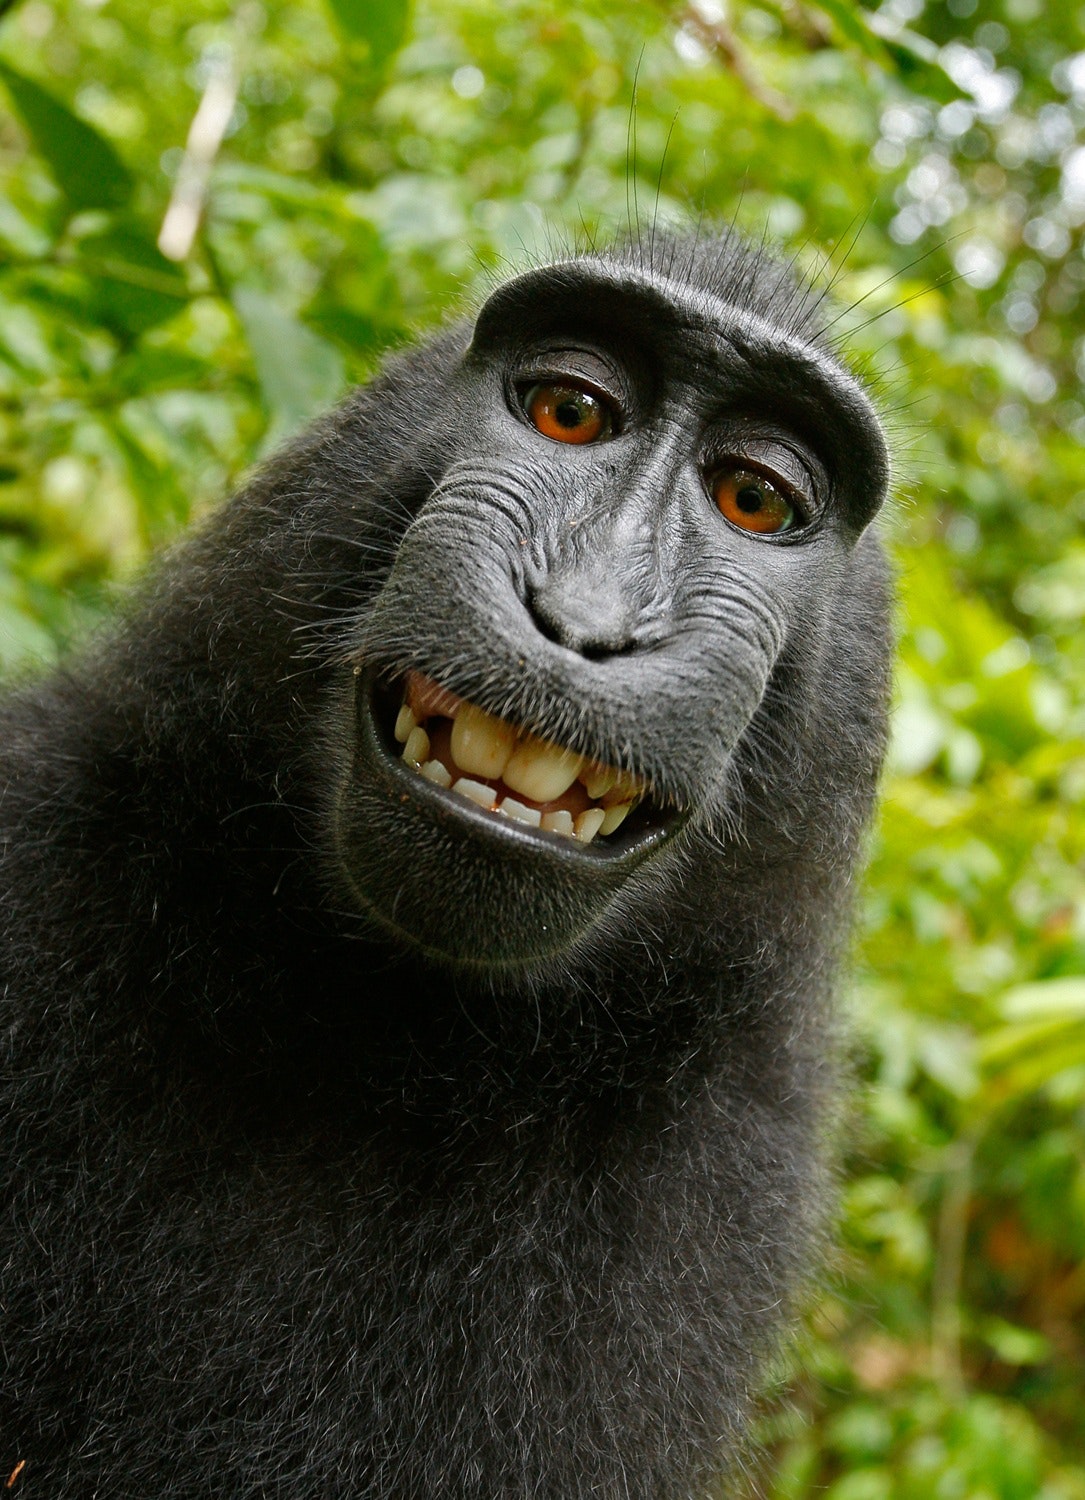 Avatar hài với hình ảnh khỉ sẽ khiến bạn không thể rời mắt khỏi đó. Chúng thể hiện được tính cách nghịch ngợm và đáng yêu của khỉ đột, mang đến cho bạn những giây phút thư giãn giải trí tuyệt vời.